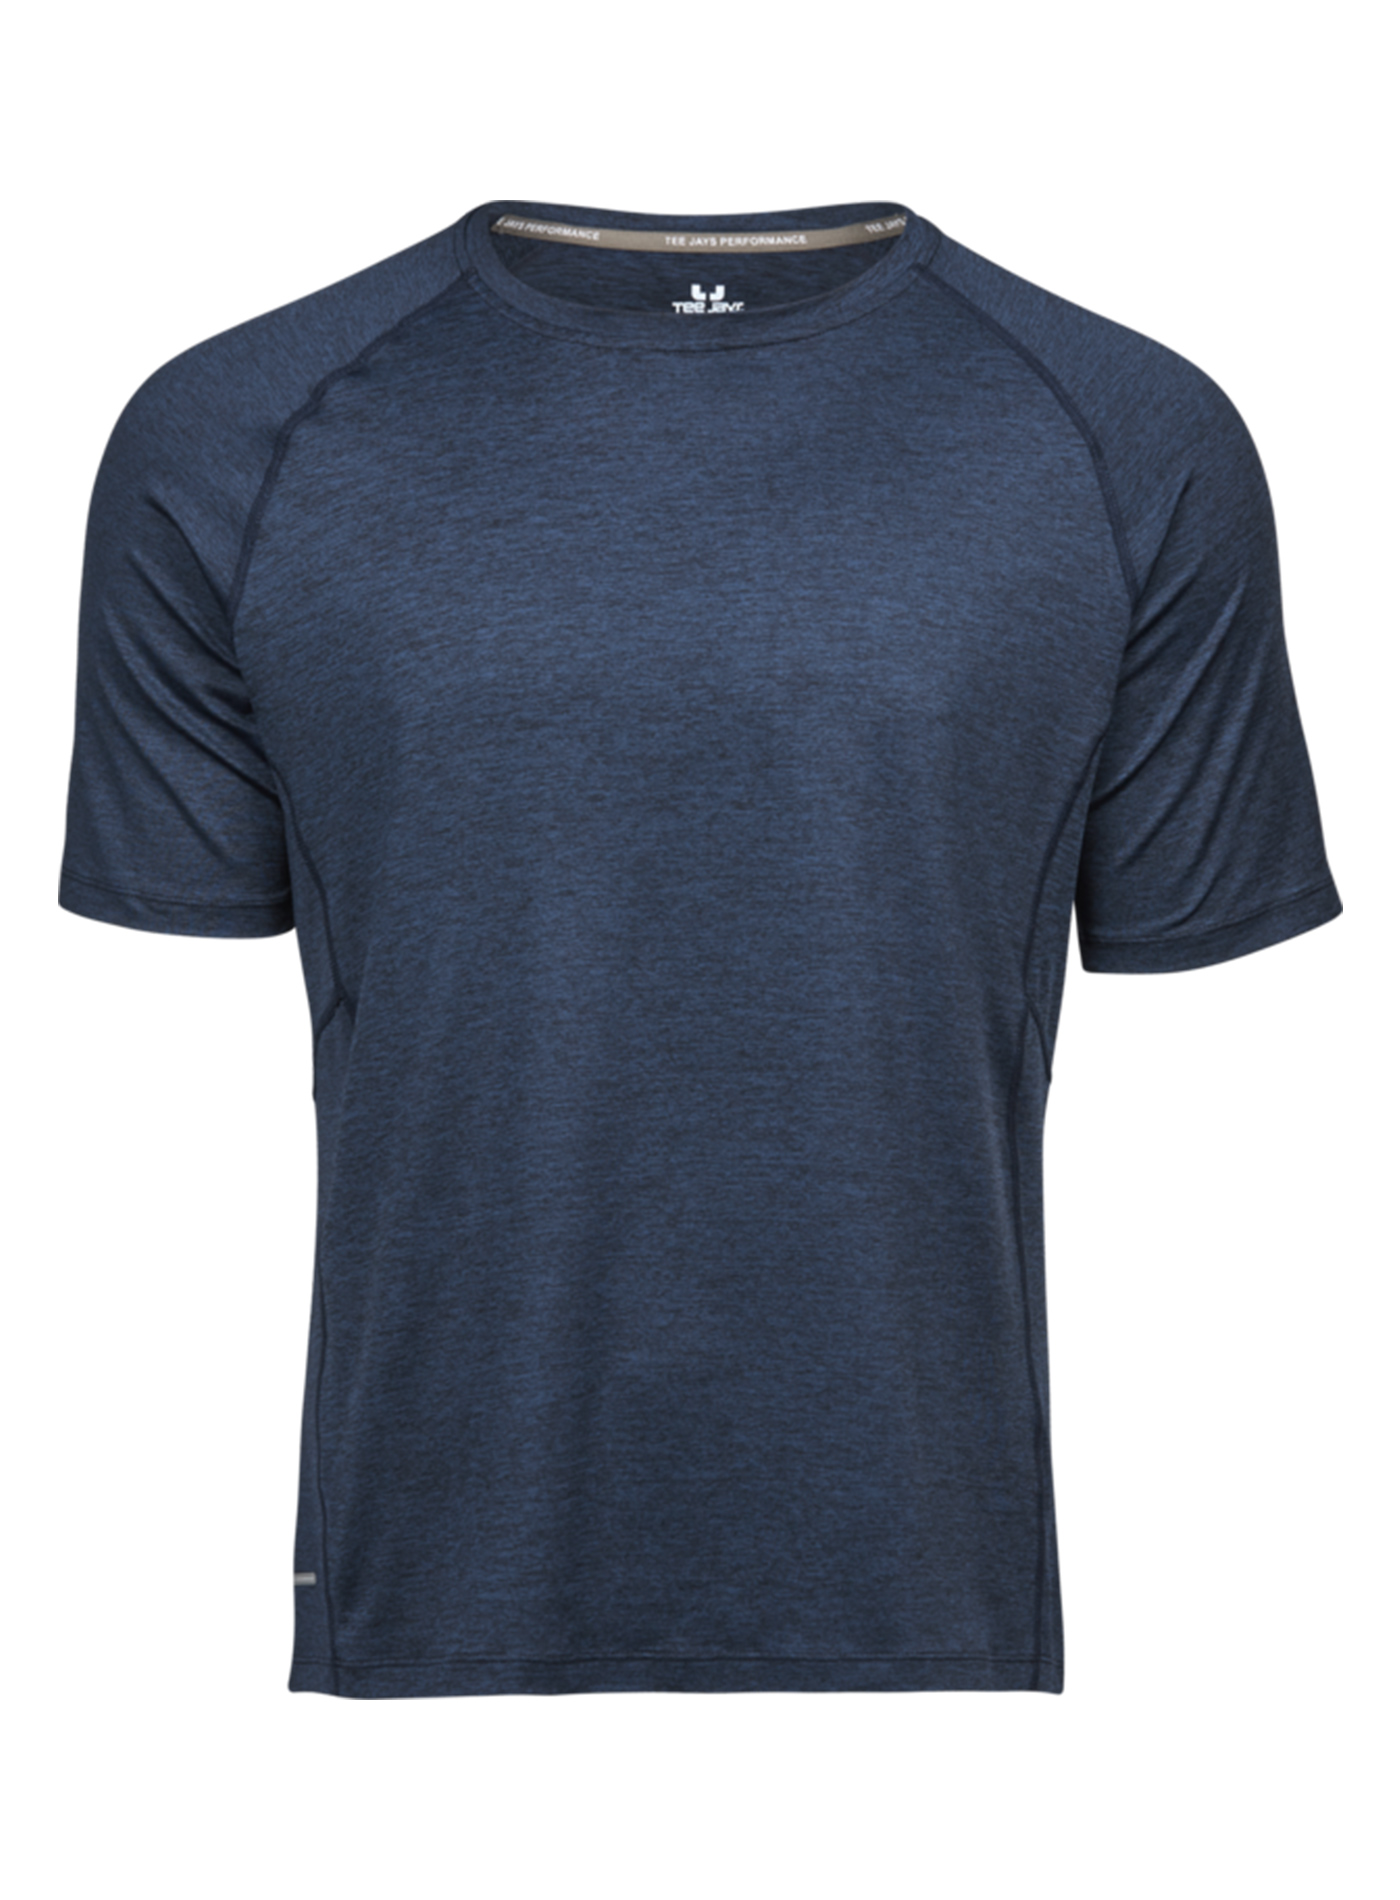 Pánské sportovní tričko cool dry Tee Jays - Námořnická modrá M